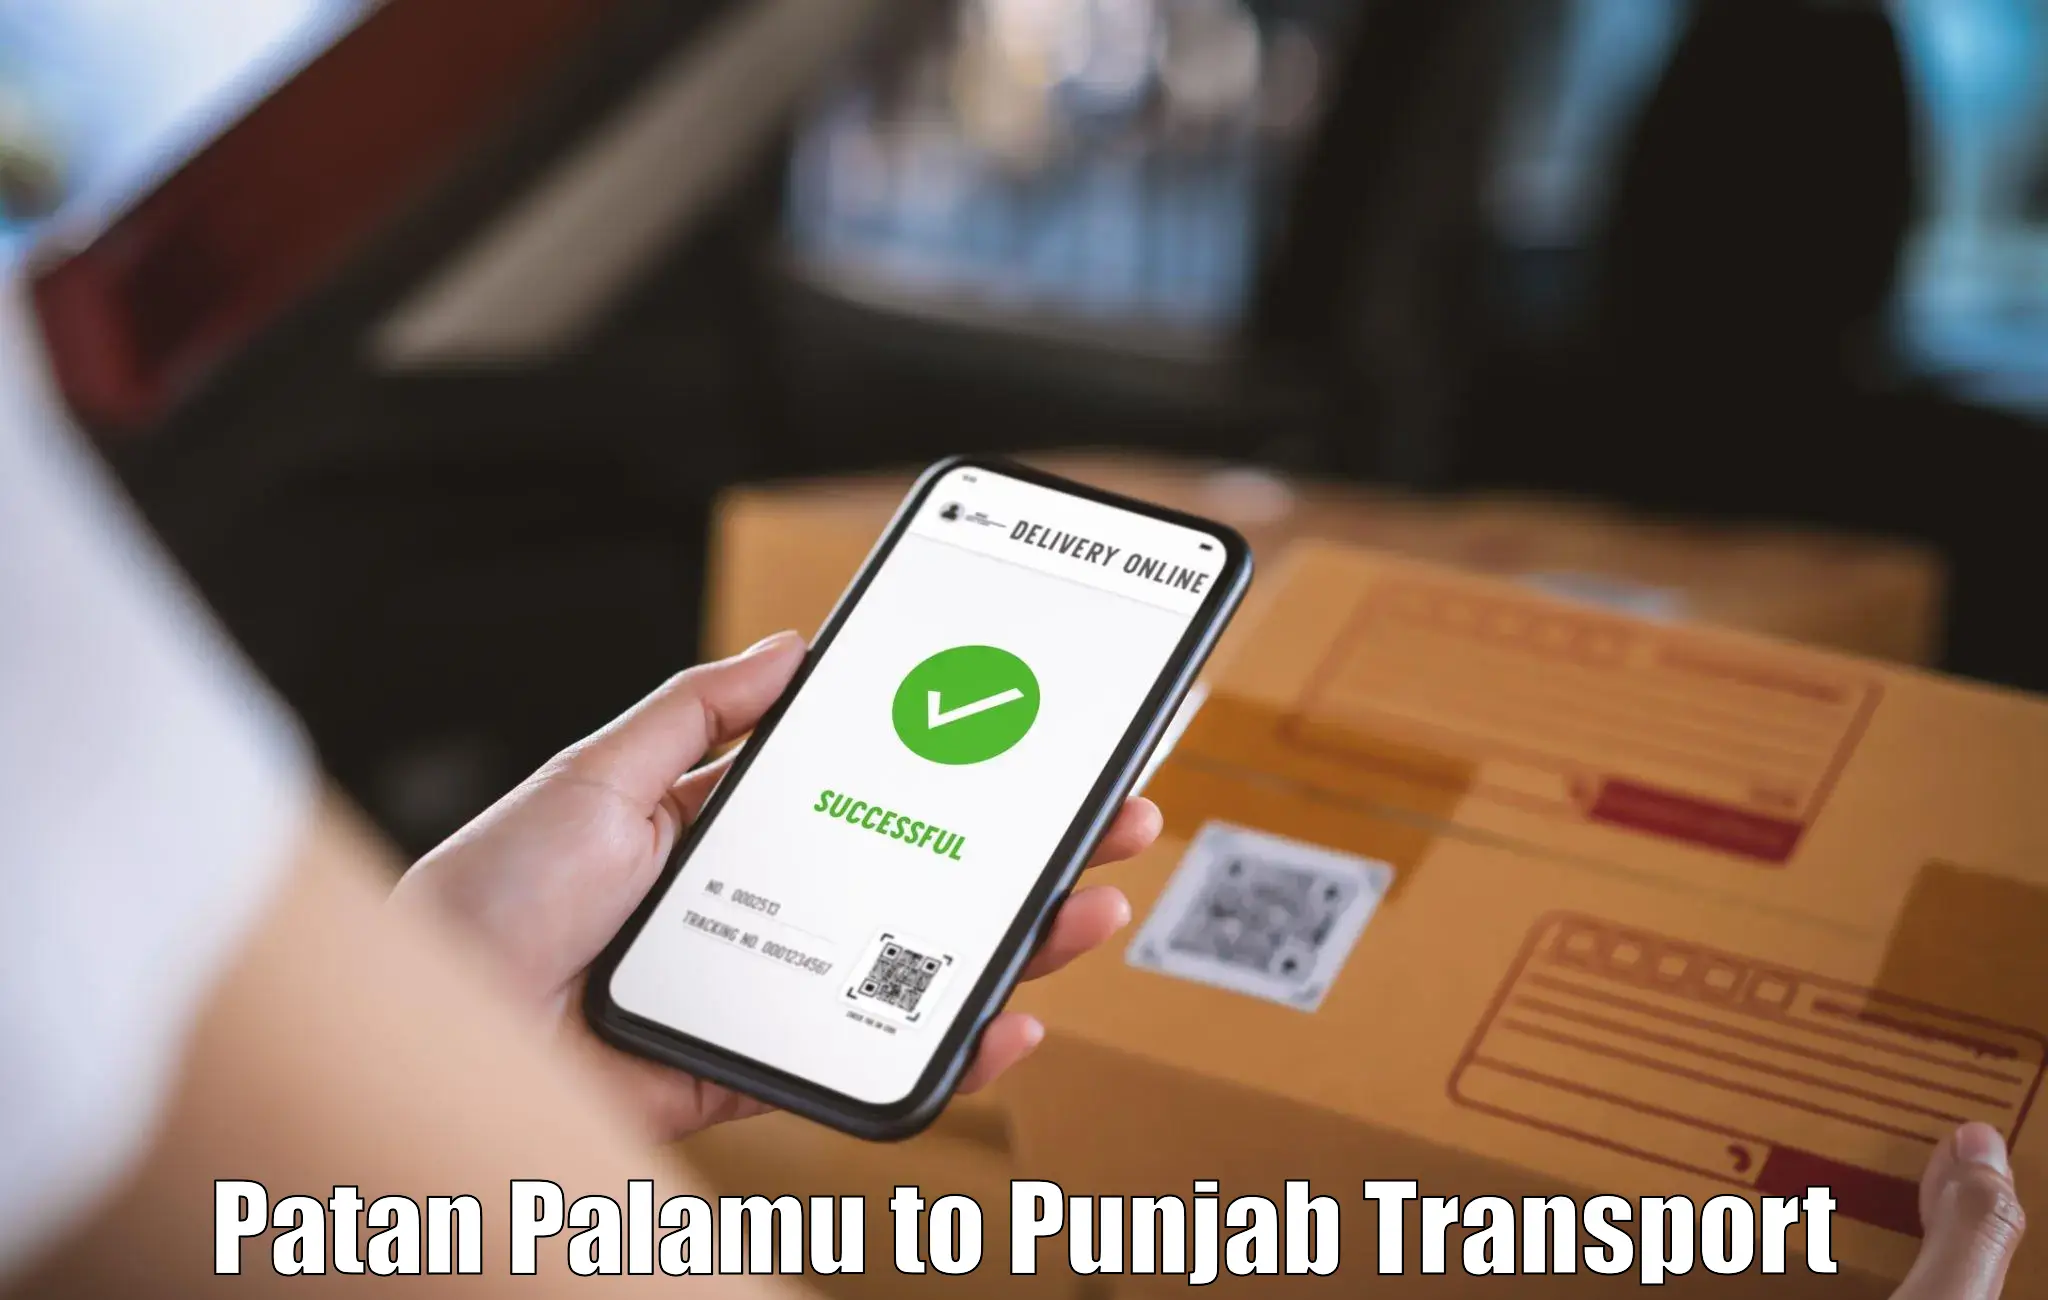 Bike shipping service Patan Palamu to Garhshankar